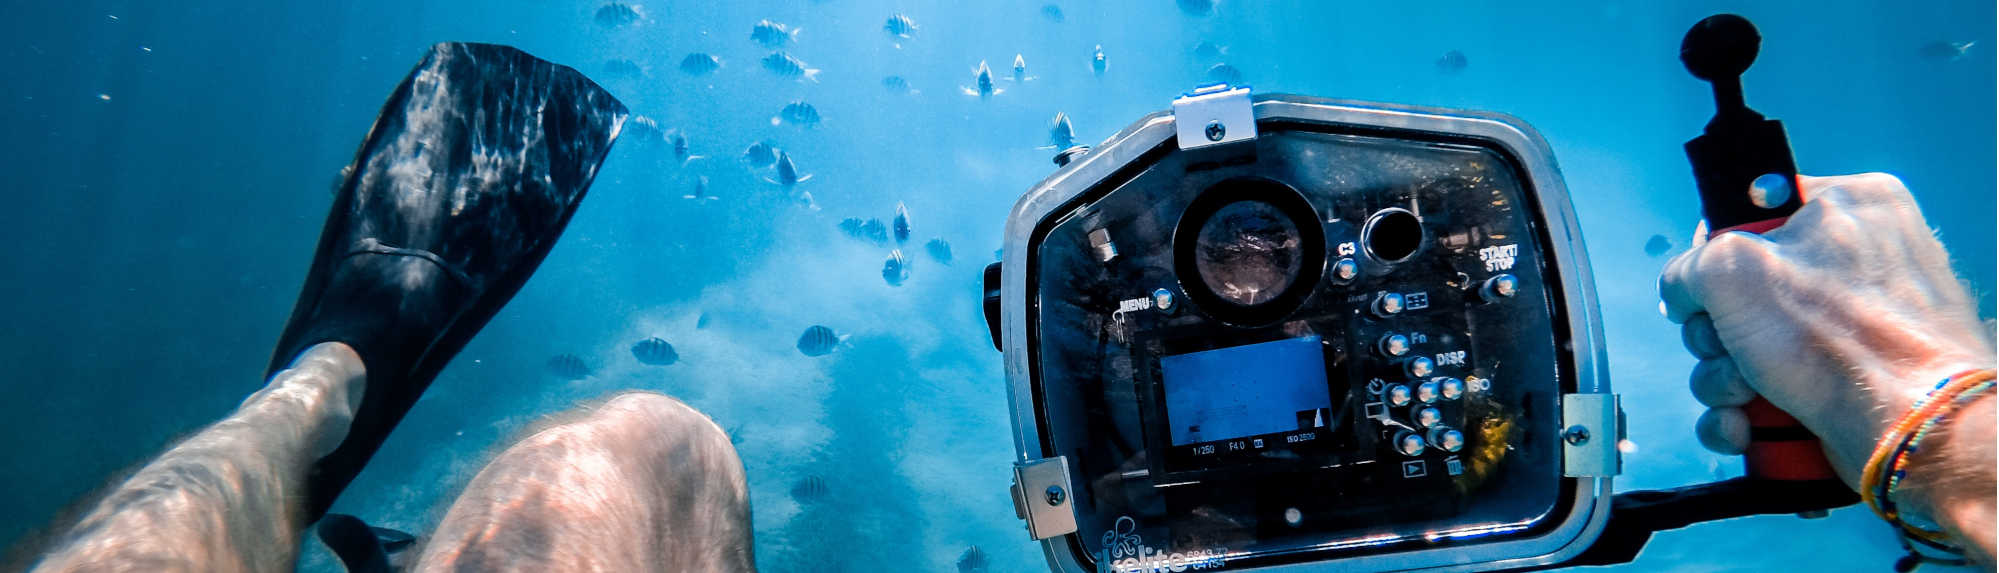 Best Cameras to Use Underwater